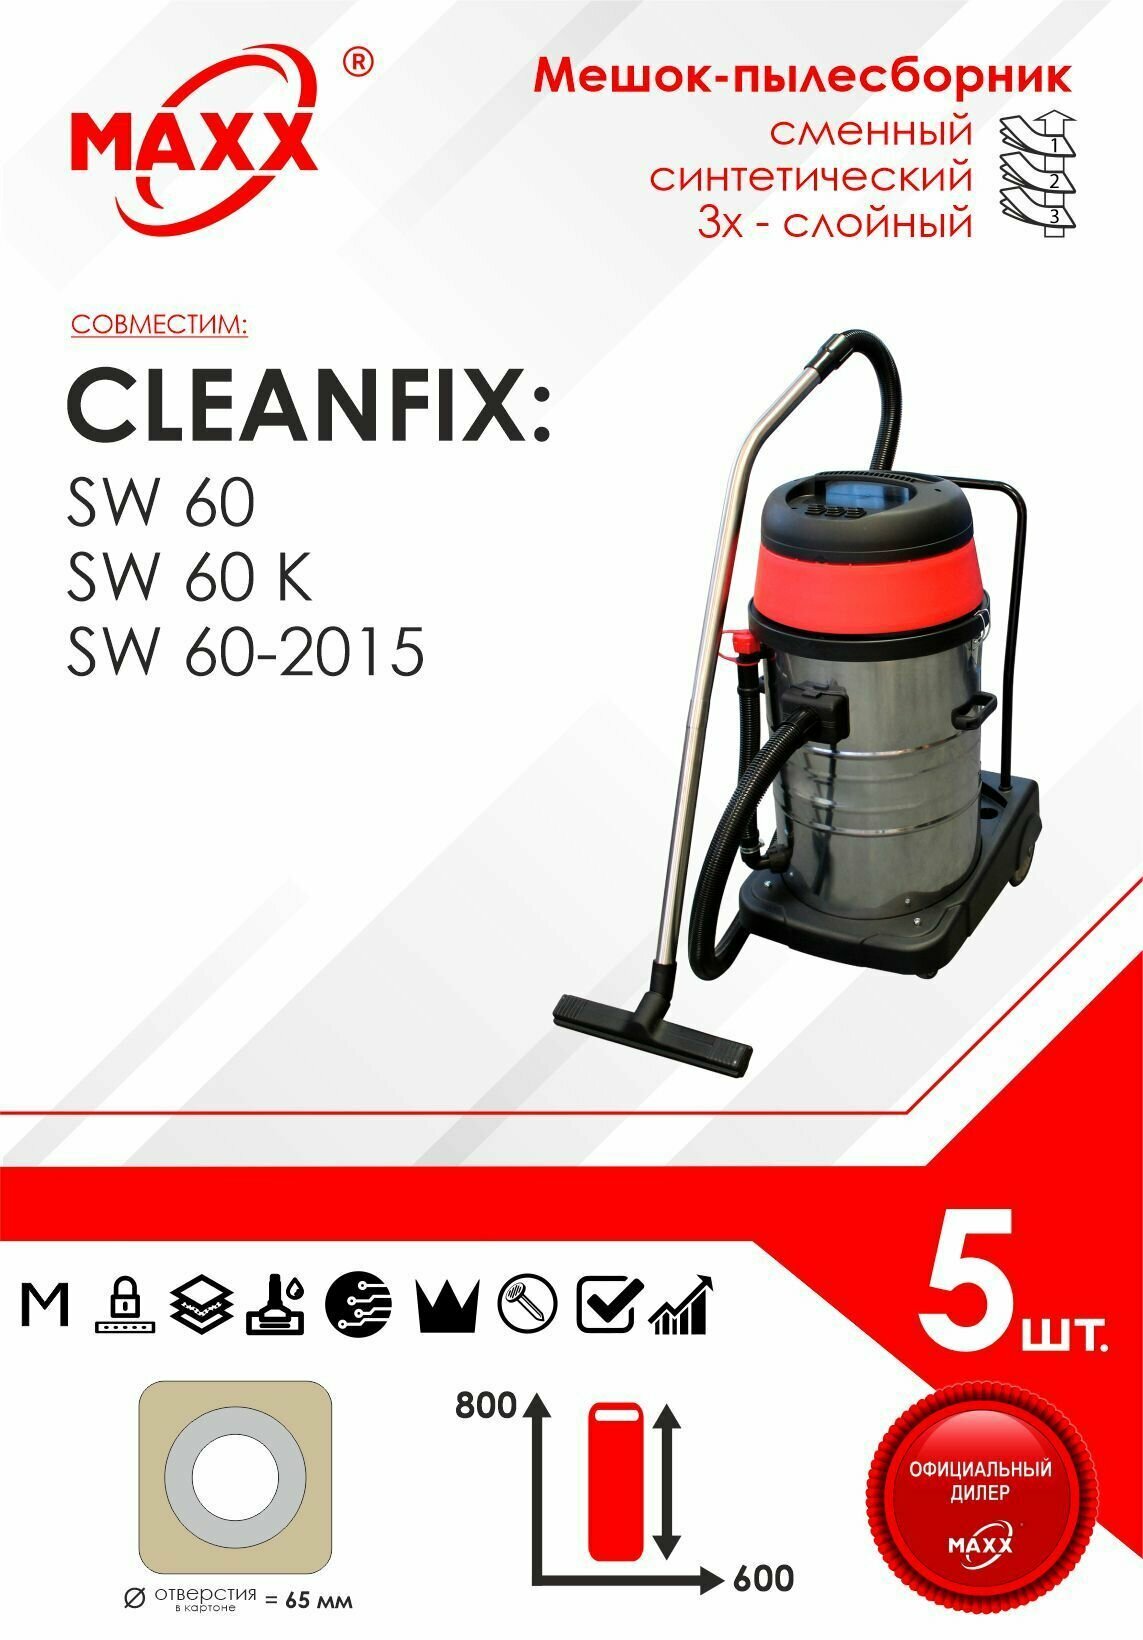 Мешок - пылесборник 5 шт. для пылесоса Cleanfix SW 60